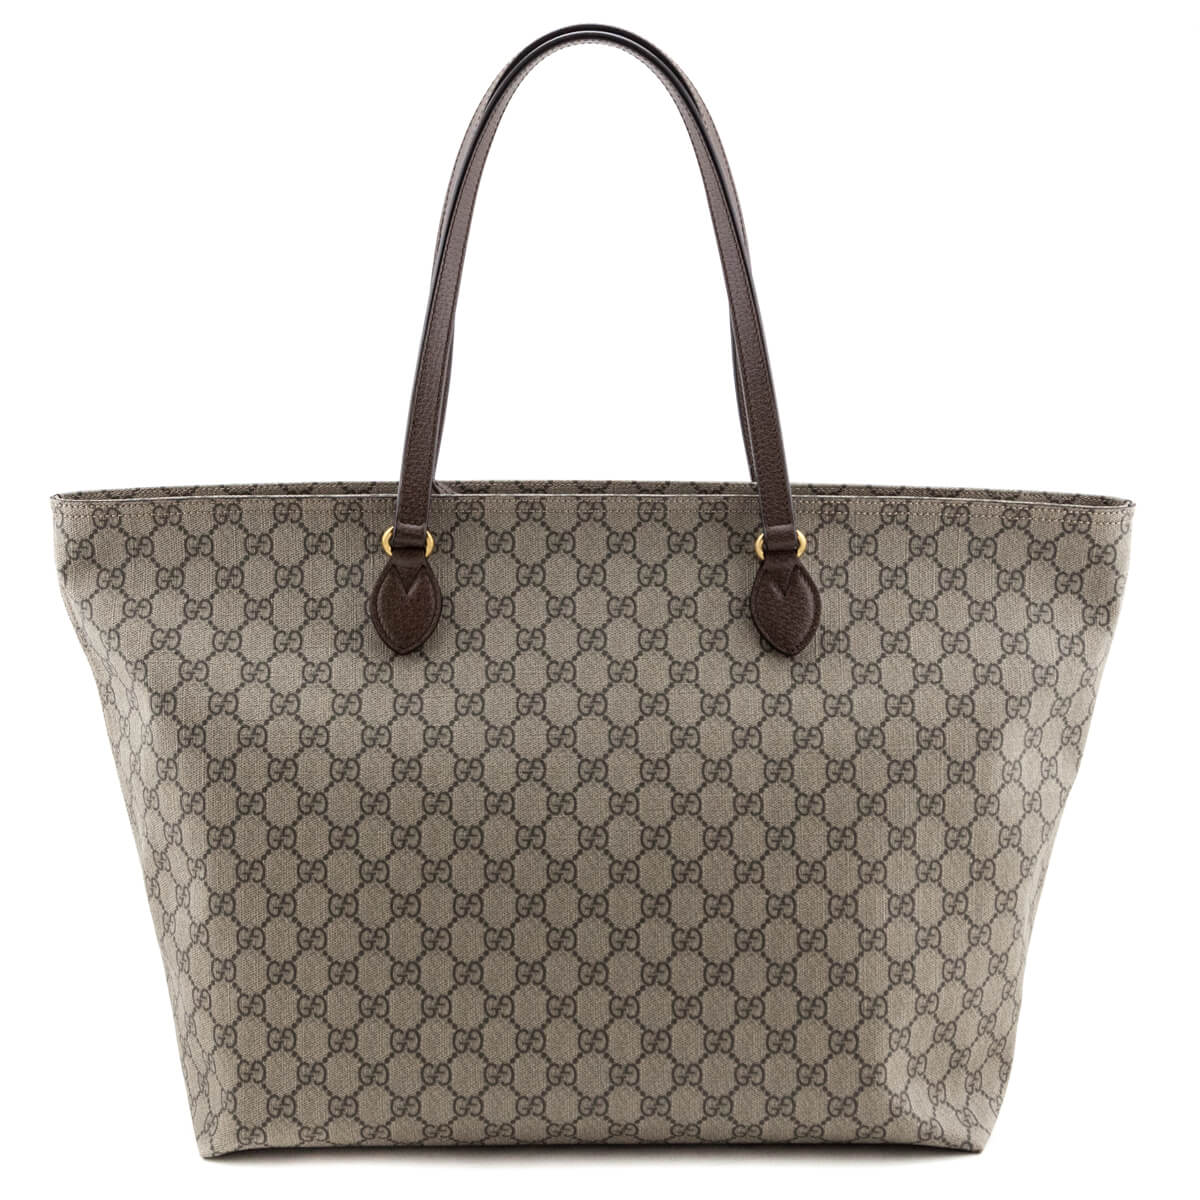 Gucci Brown GG Supreme Shopping Tote - Preloved Gucci handbags